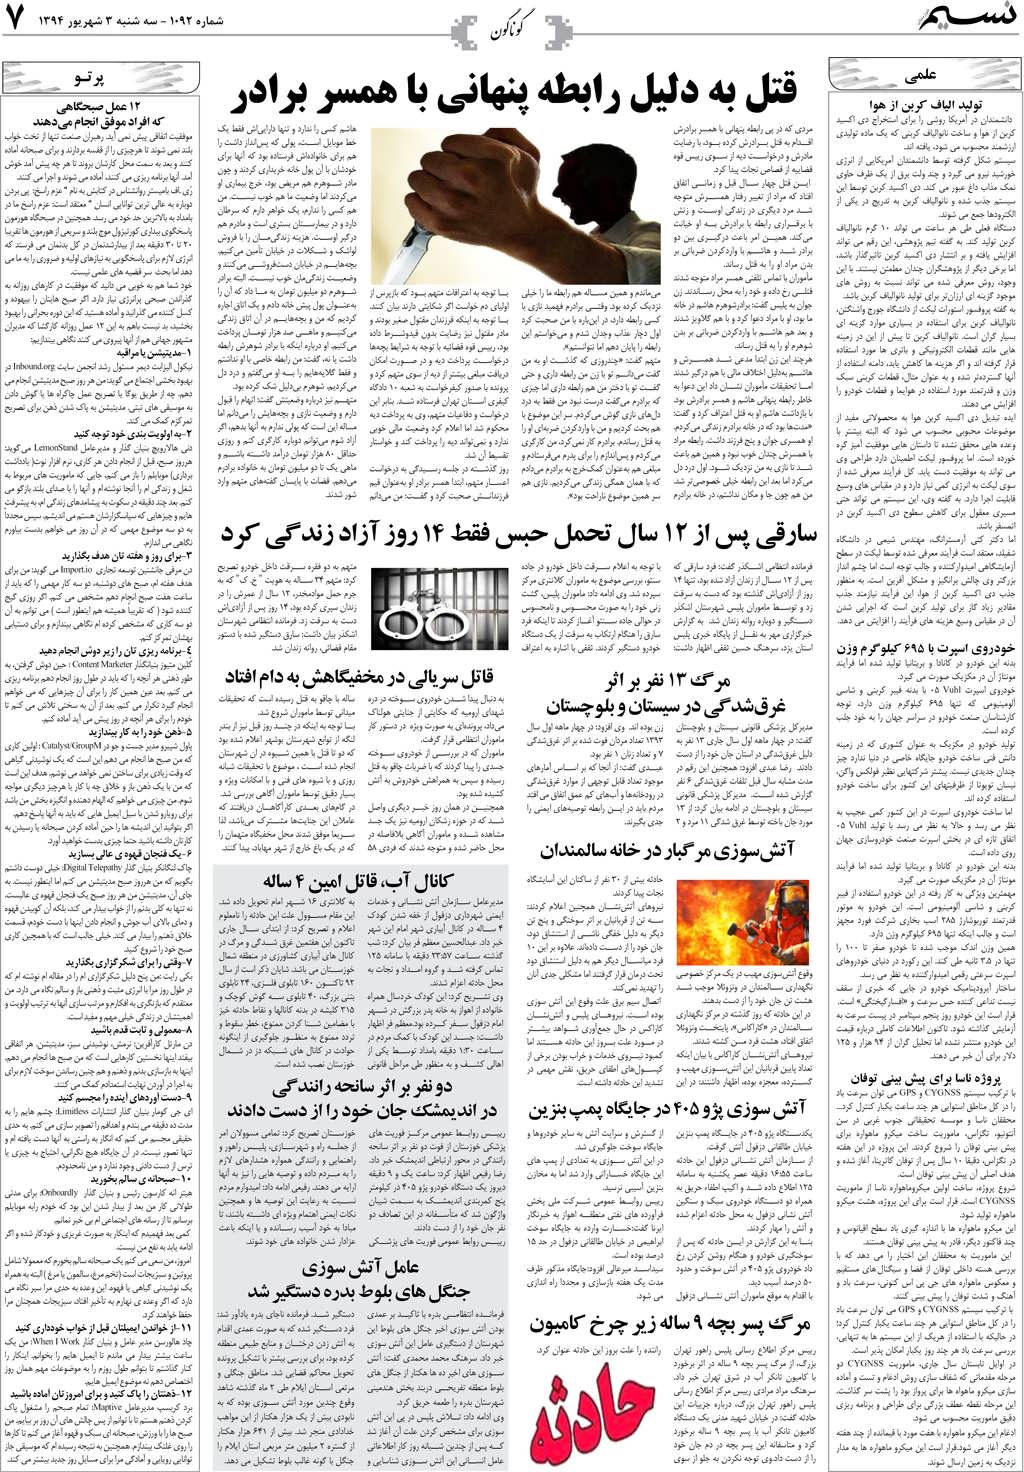 صفحه گوناگون روزنامه نسیم شماره 1092